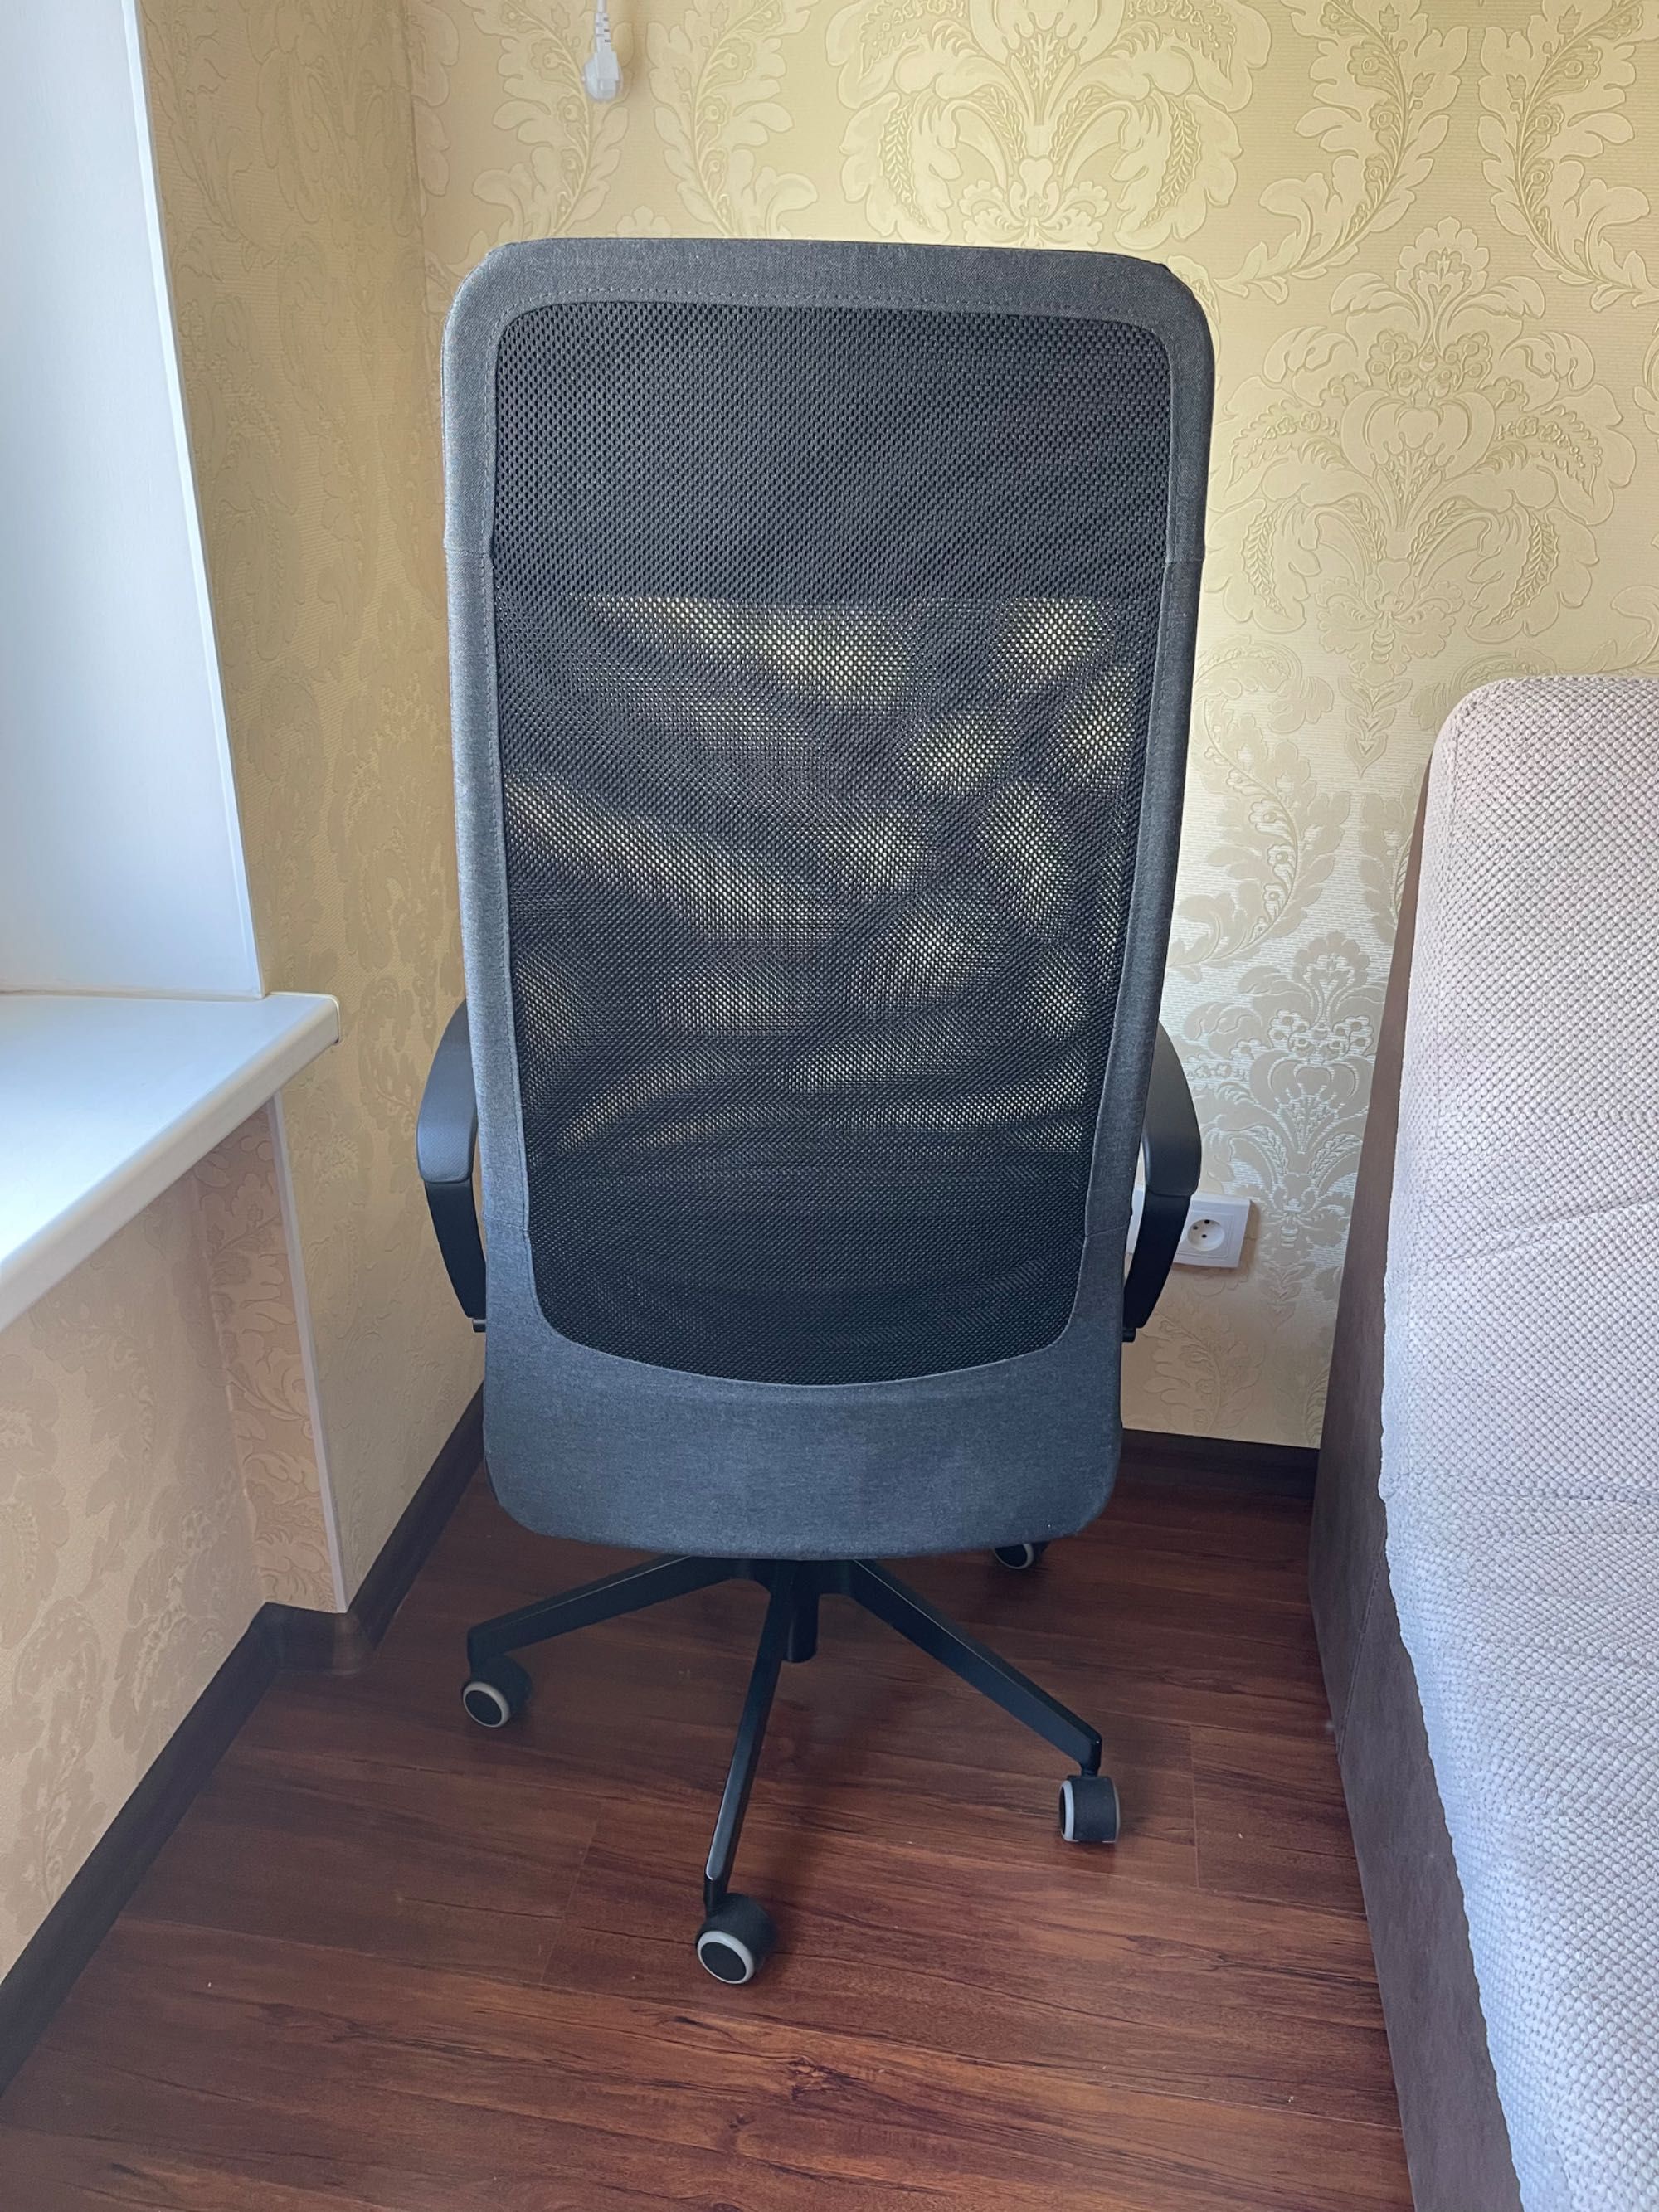 Продам новое кресло